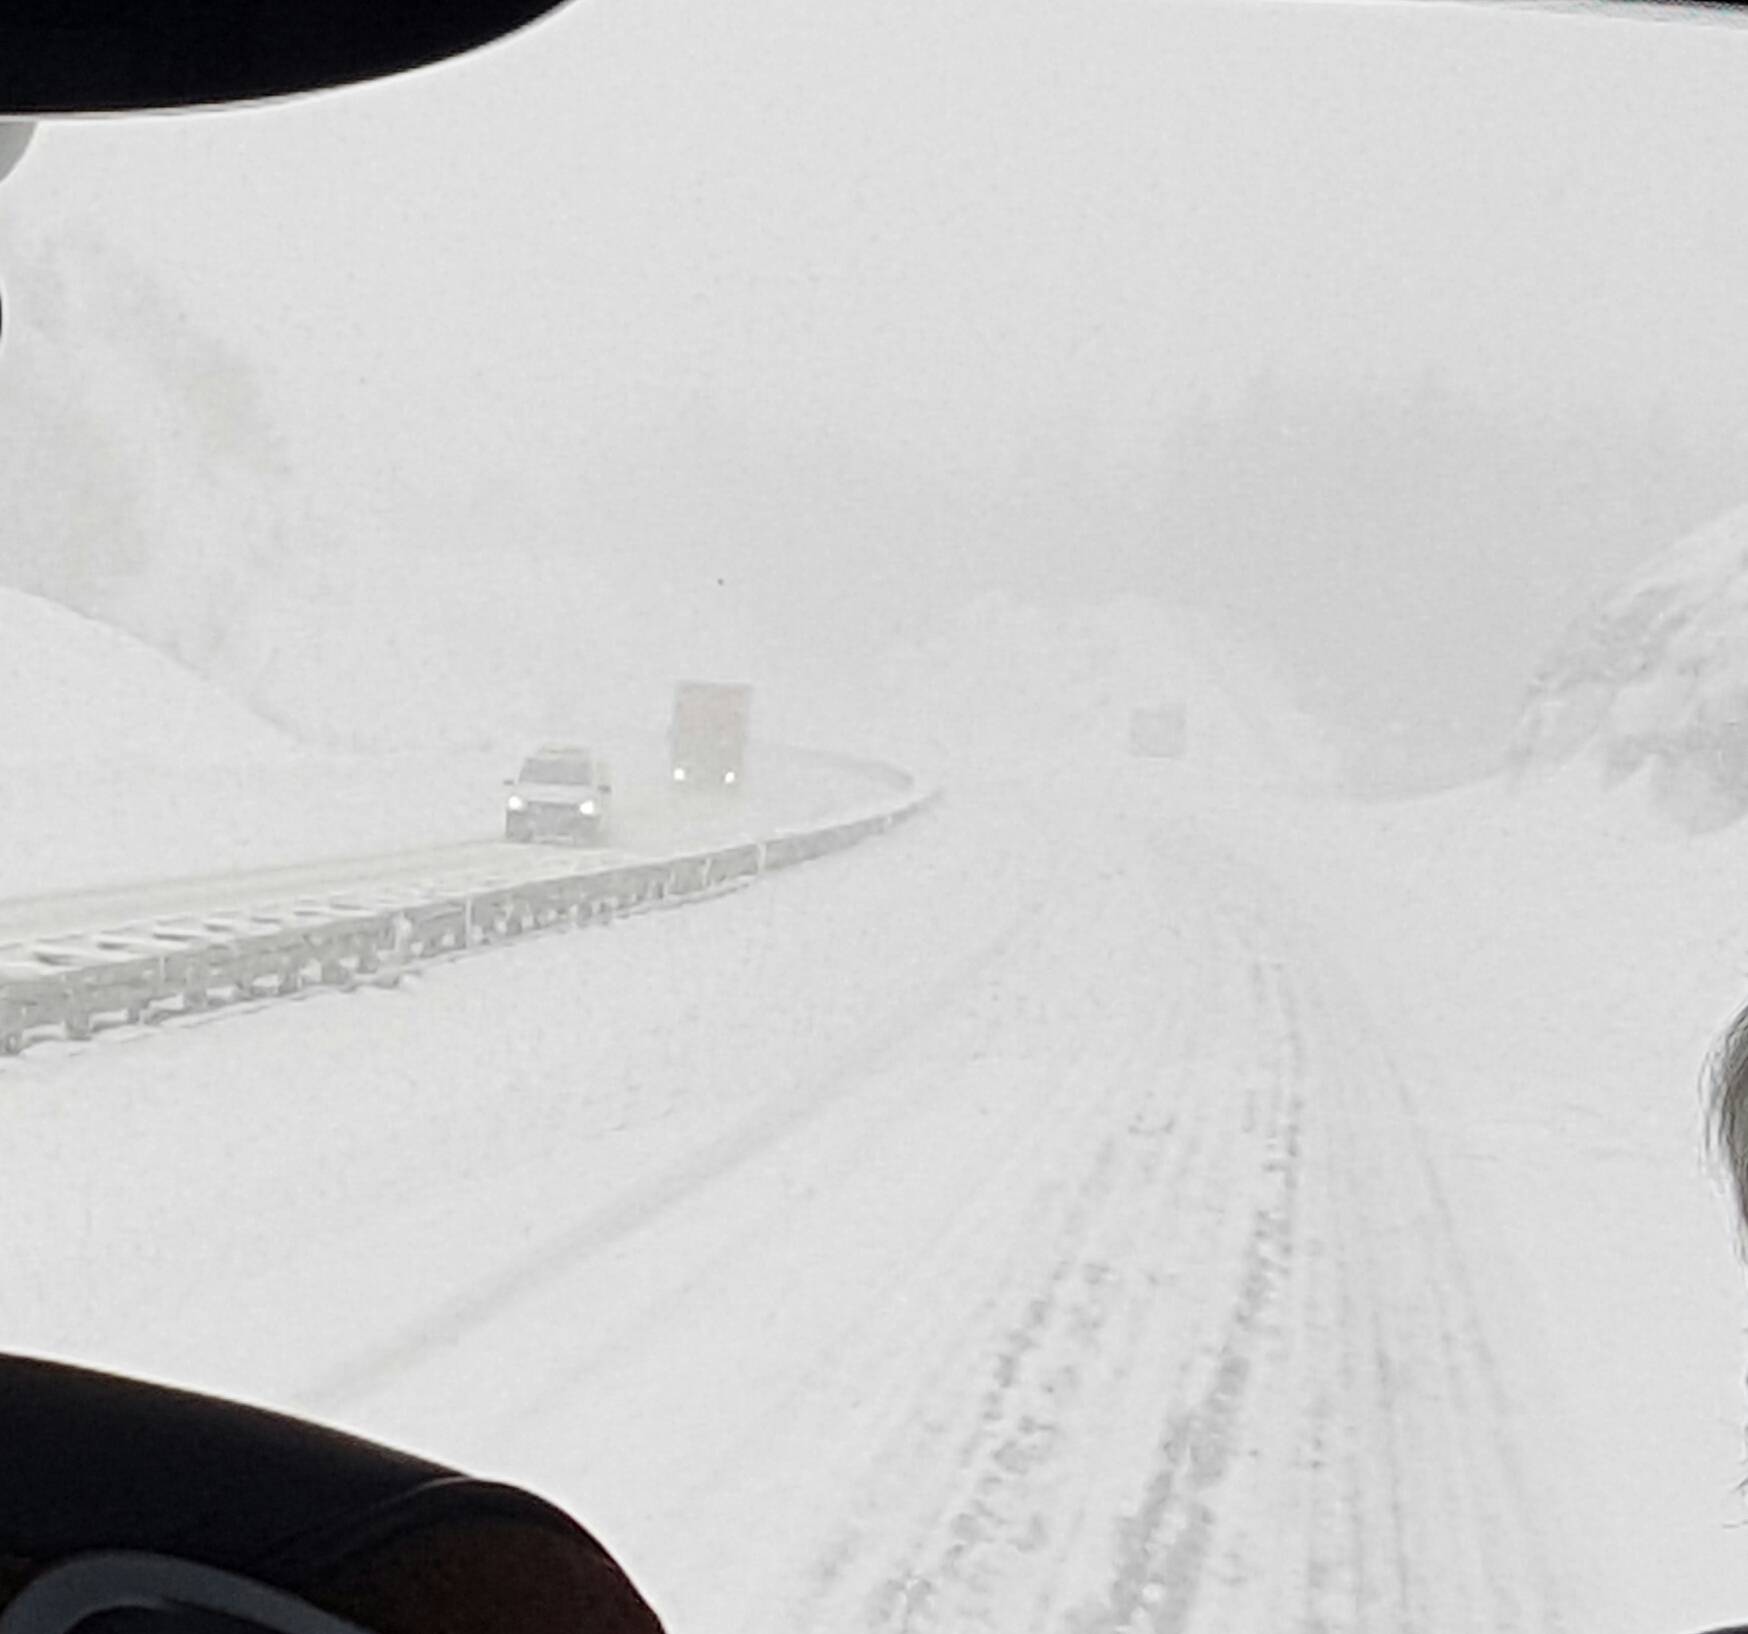 'Vrijeme je vrlo opasno': Bura i snijeg zatvorili su brojne ceste